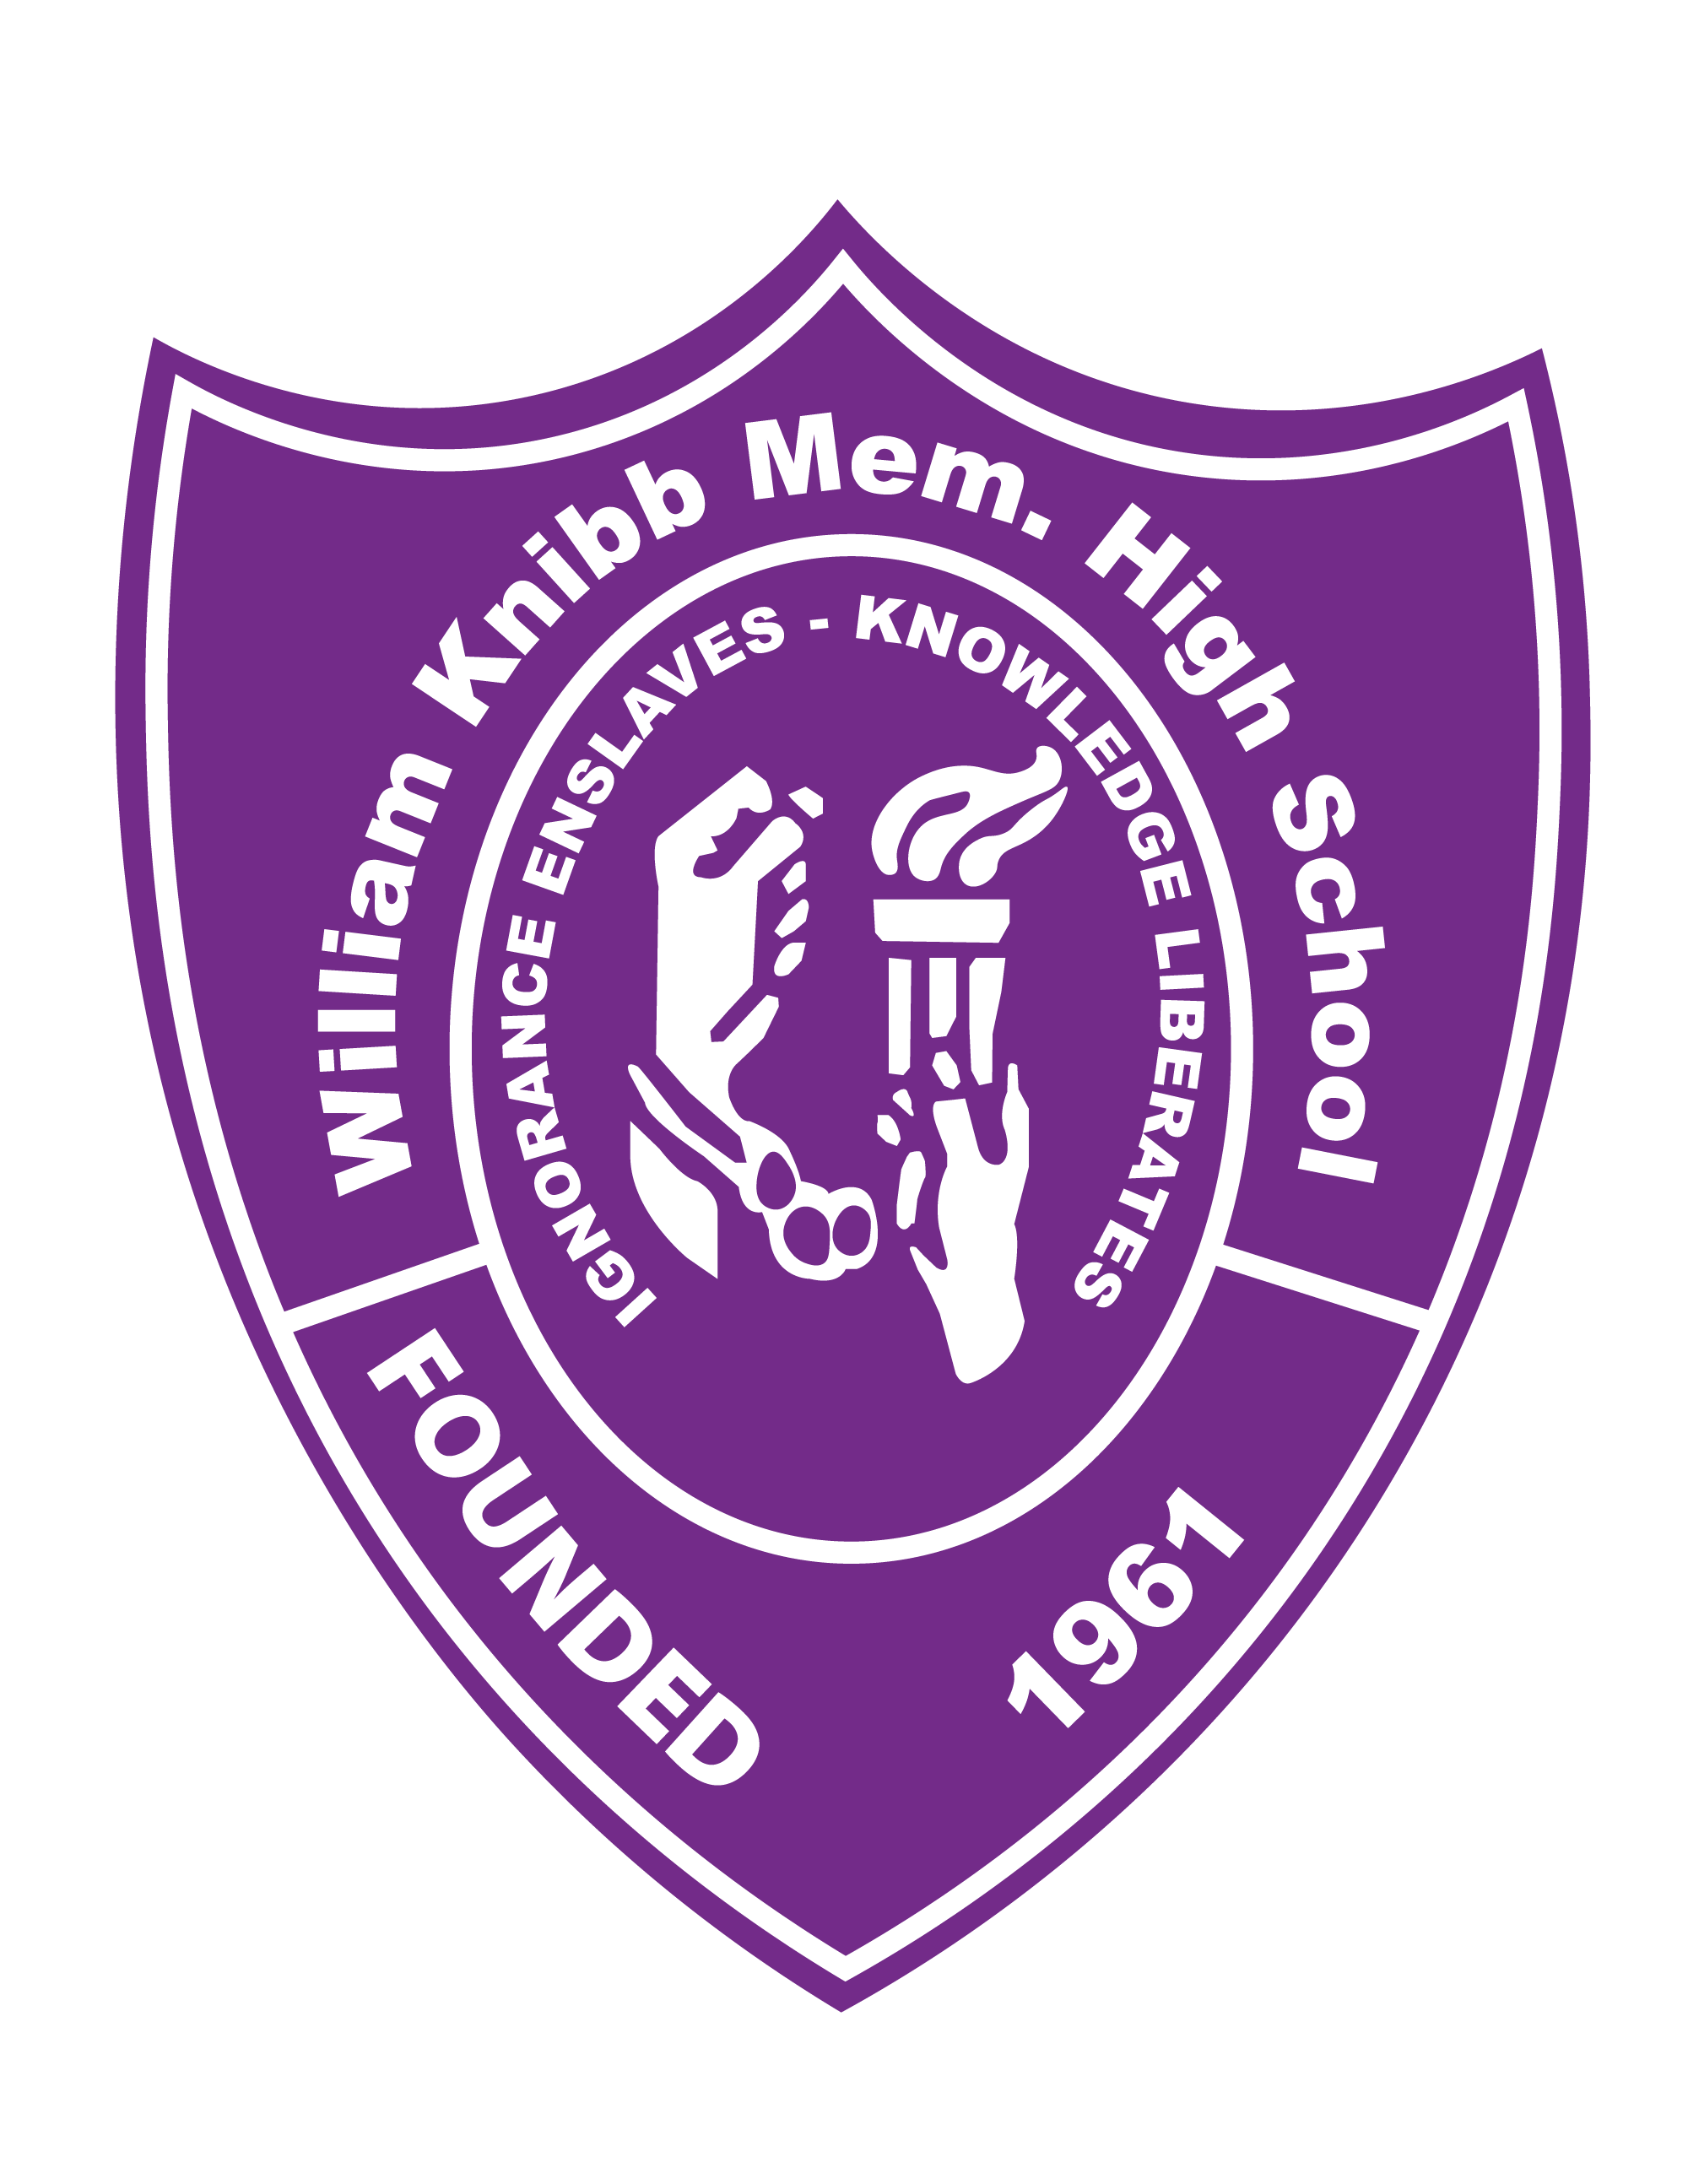 William Knibb Memorial High School